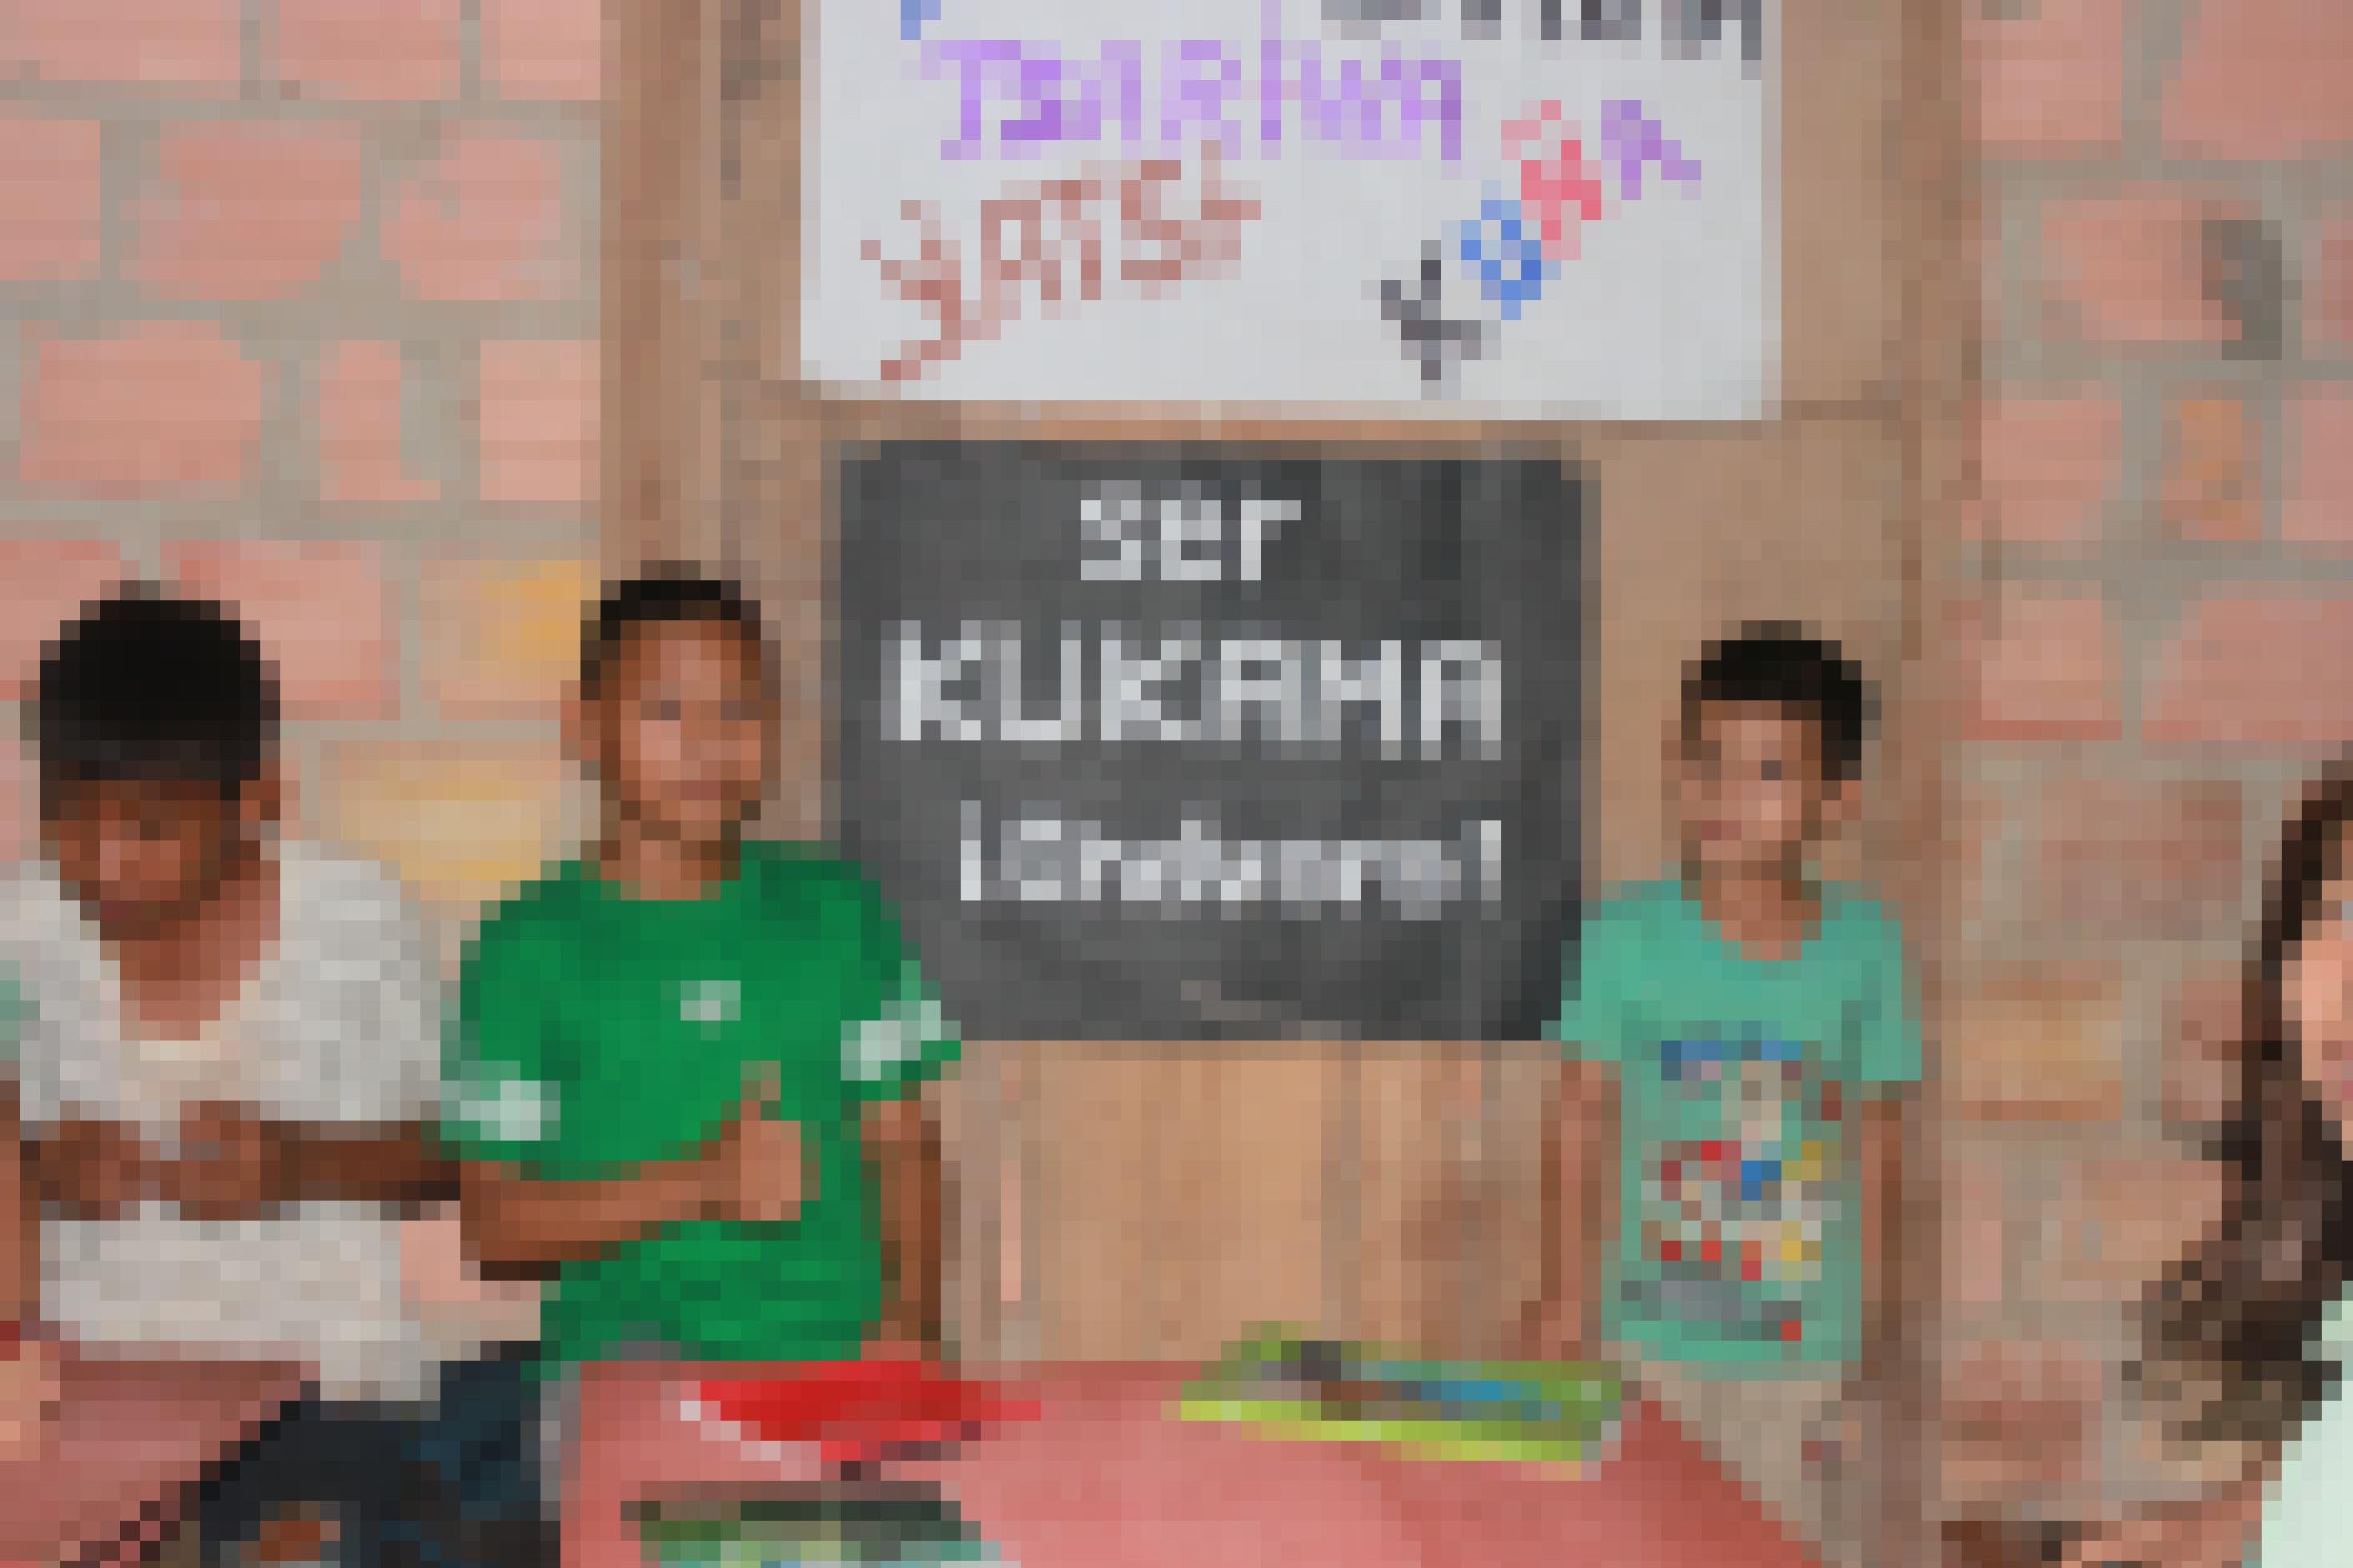 Holzwand mit schwarzem Papier, darauf in weissen Lettern: Ser kukama, chevere! Kukama sein ist cool. Daneben zwei Jugendliche.